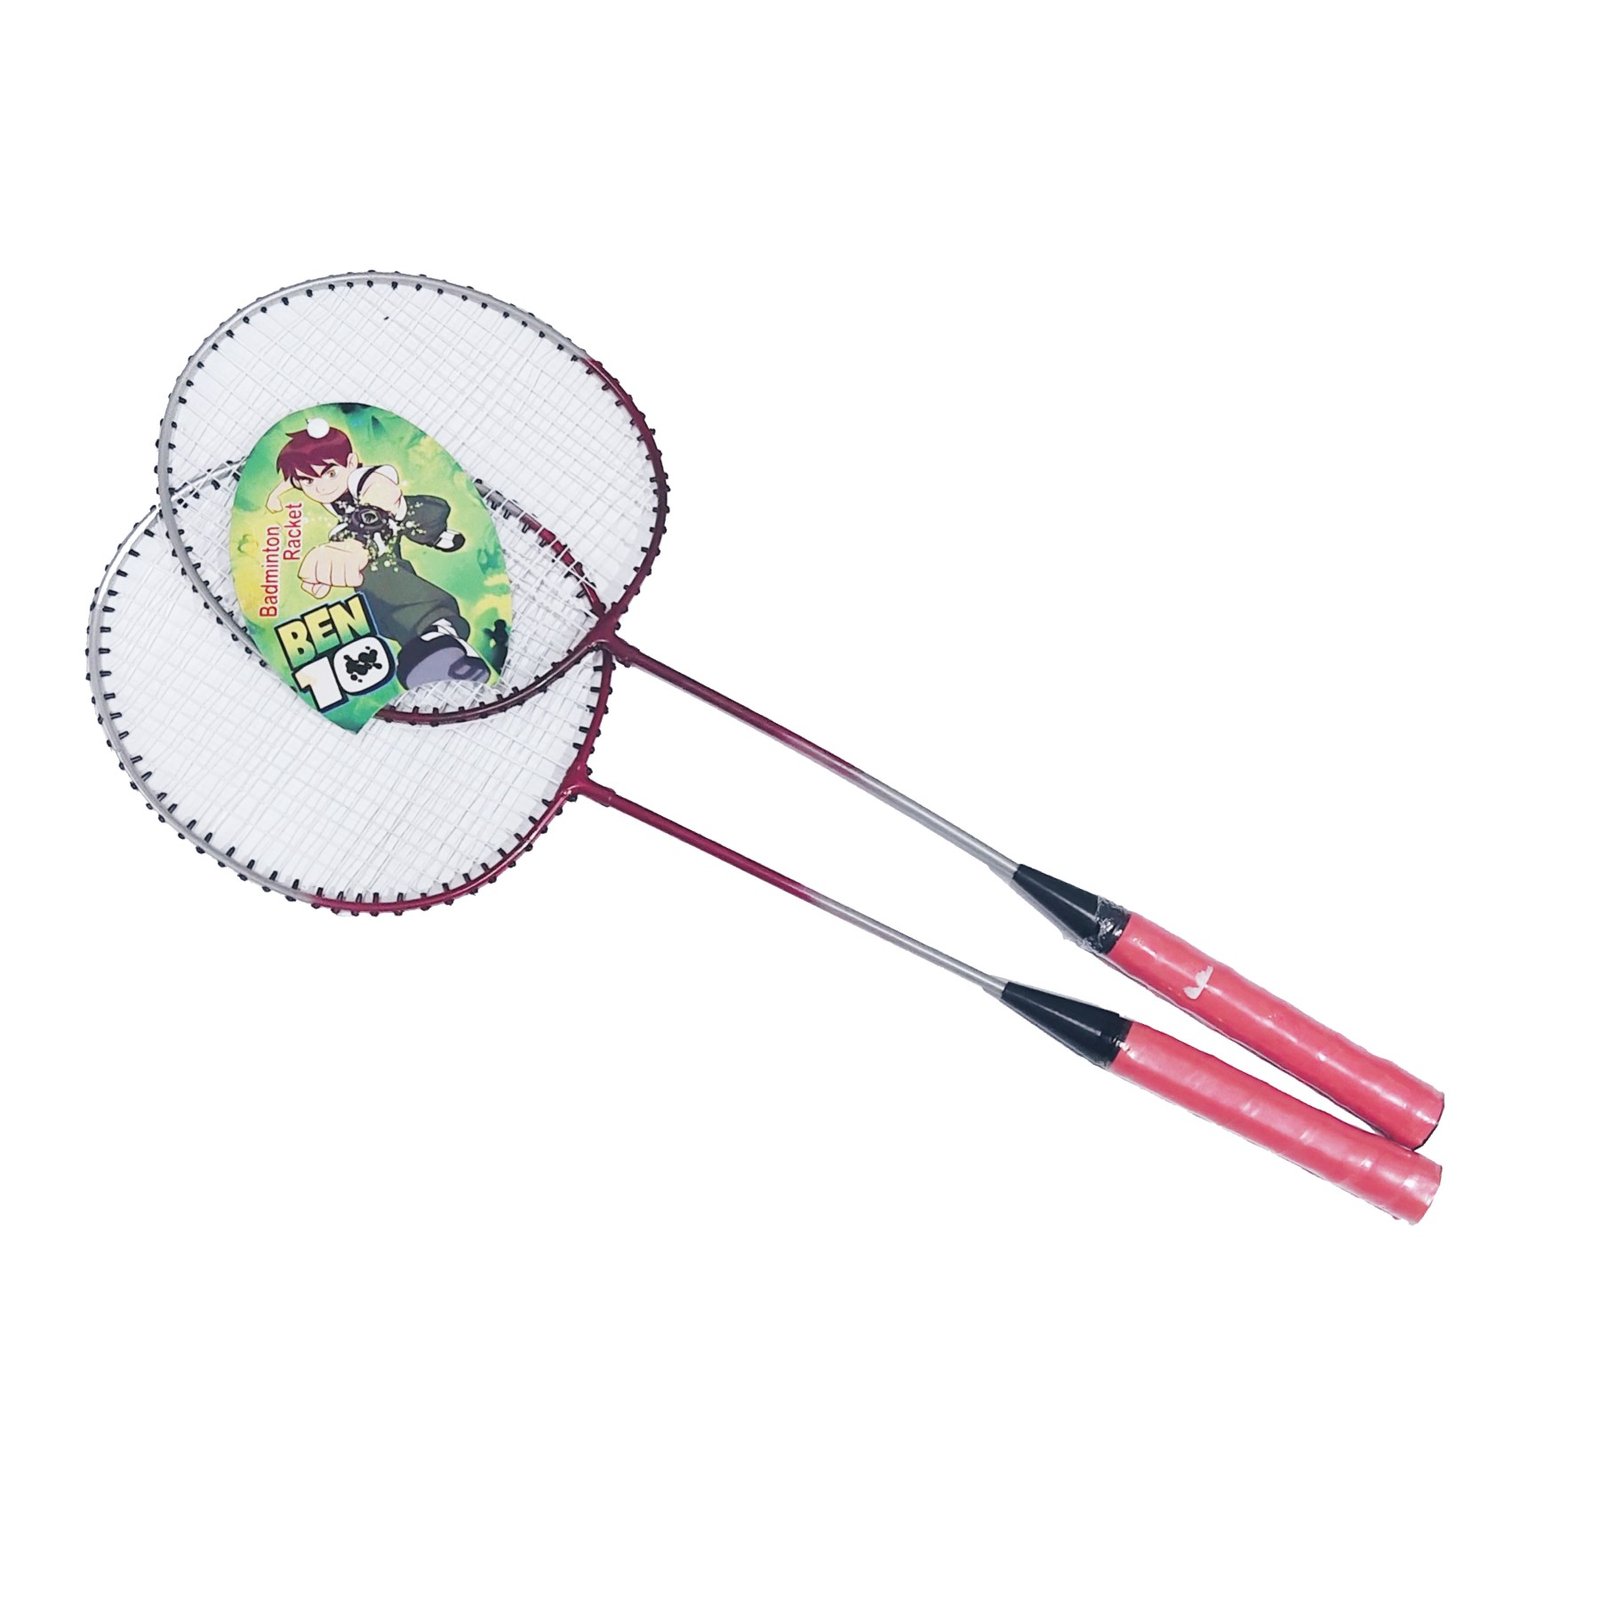 Ben 10 Badminton Rackets